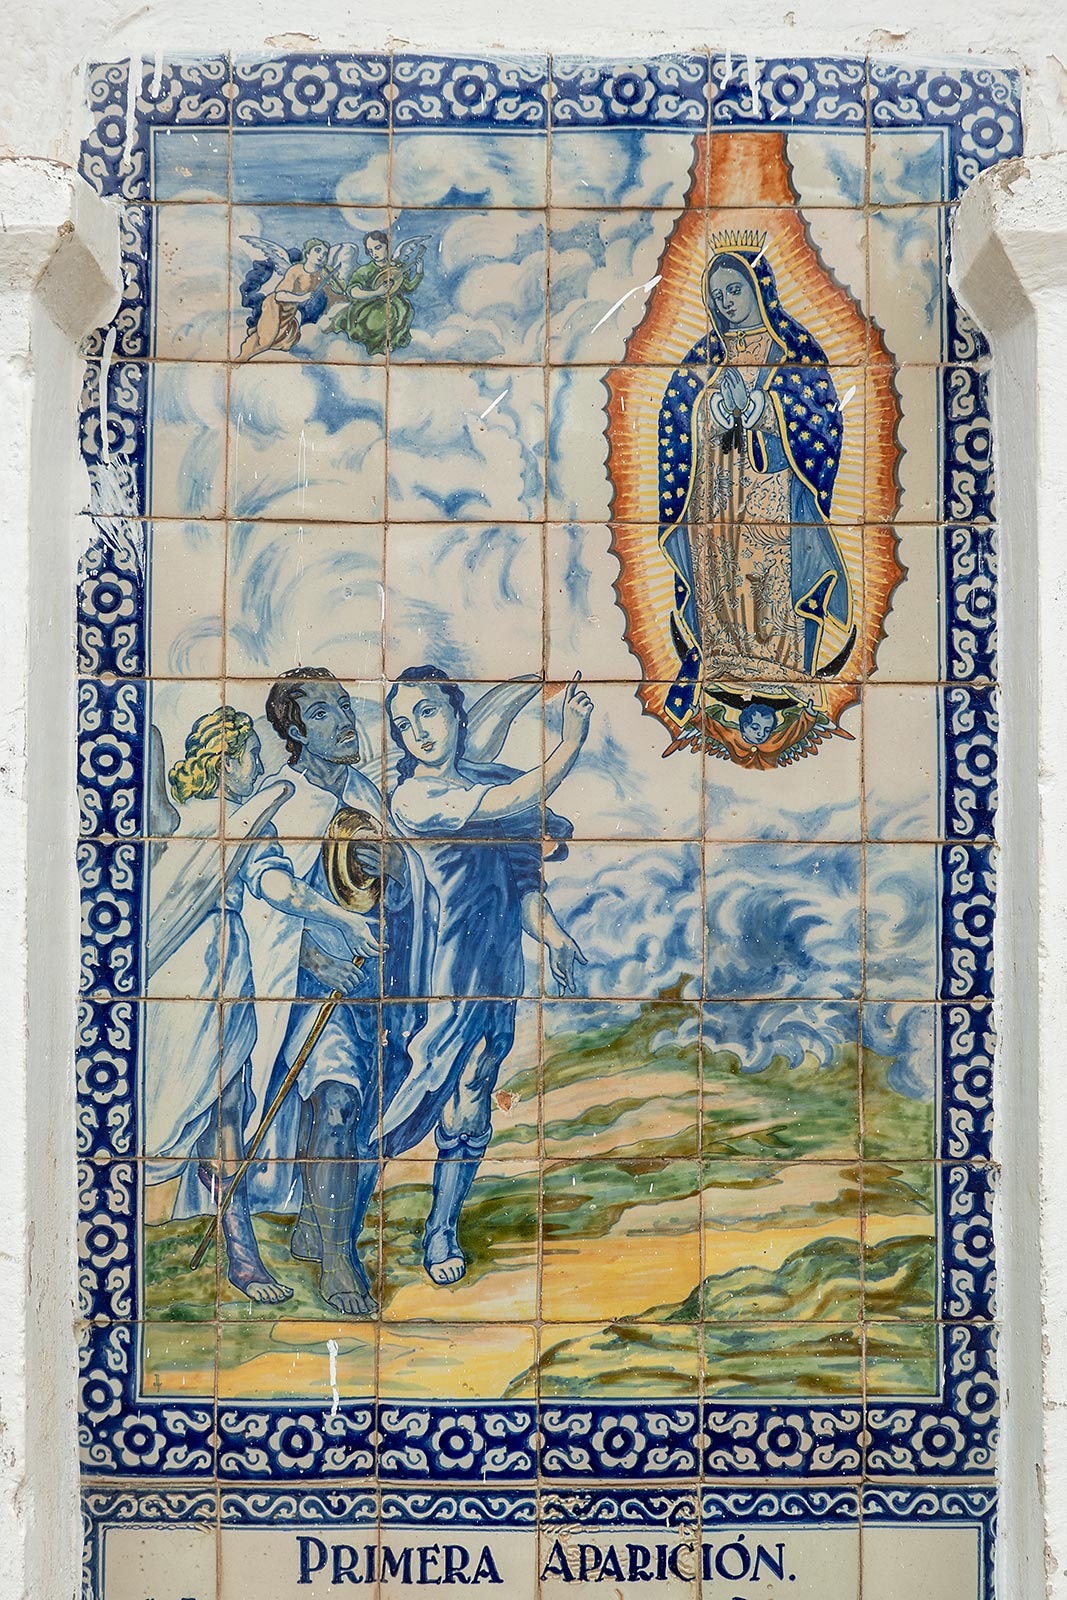 Imagen pintada sobre azulejos de la primera aparición de la Virgen María a Juan Diego, Santuario del Señor del Sacromonte Amecameca